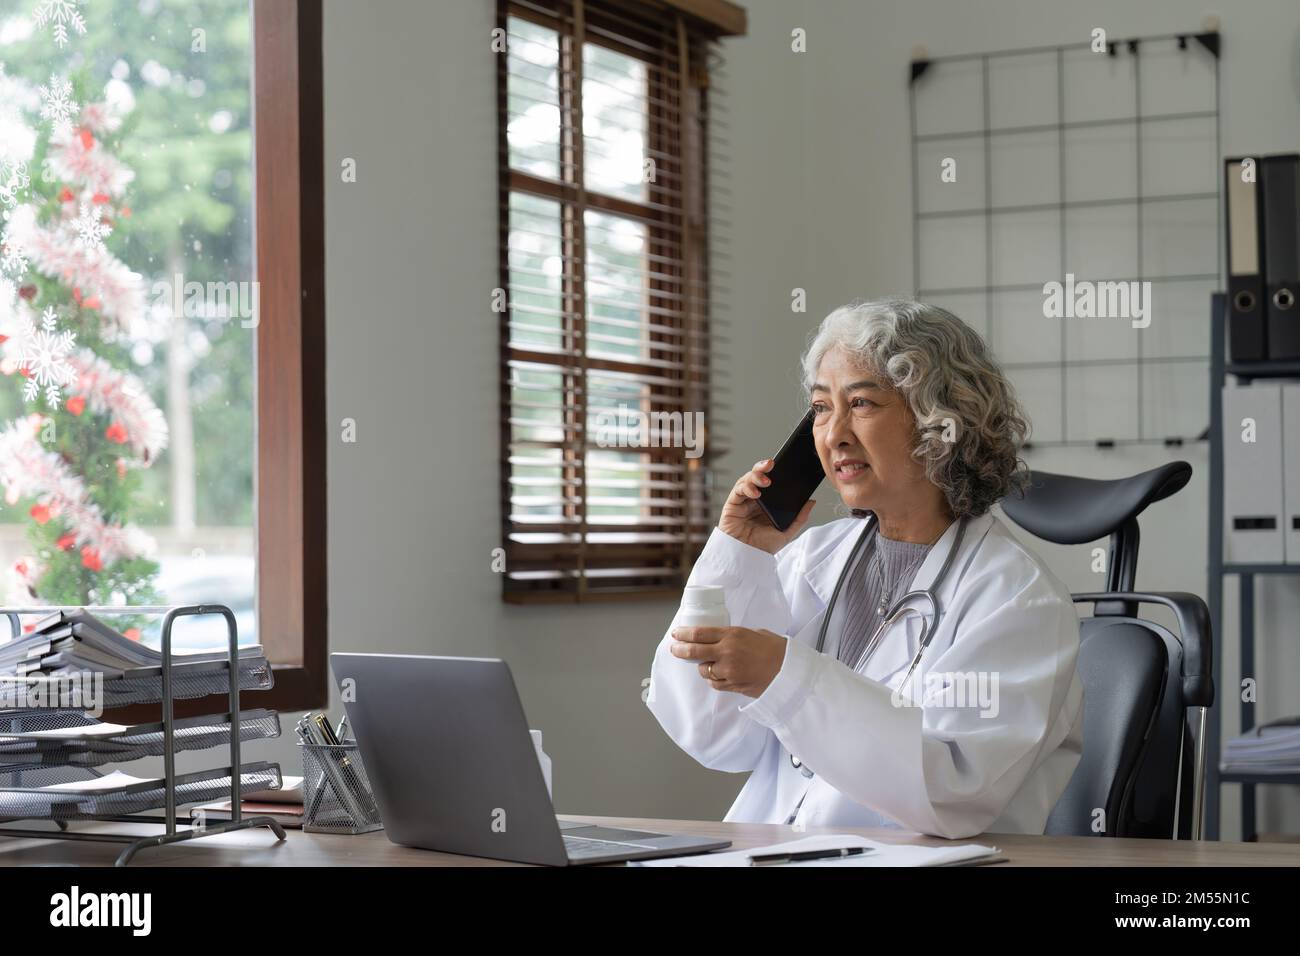 Médecin asiatique senior utilisant un téléphone portable parlant alors qu'elle est assise dans le bureau de l'hôpital. femme heureuse médecin travailleur ayant une conversation joyeuse avec Banque D'Images